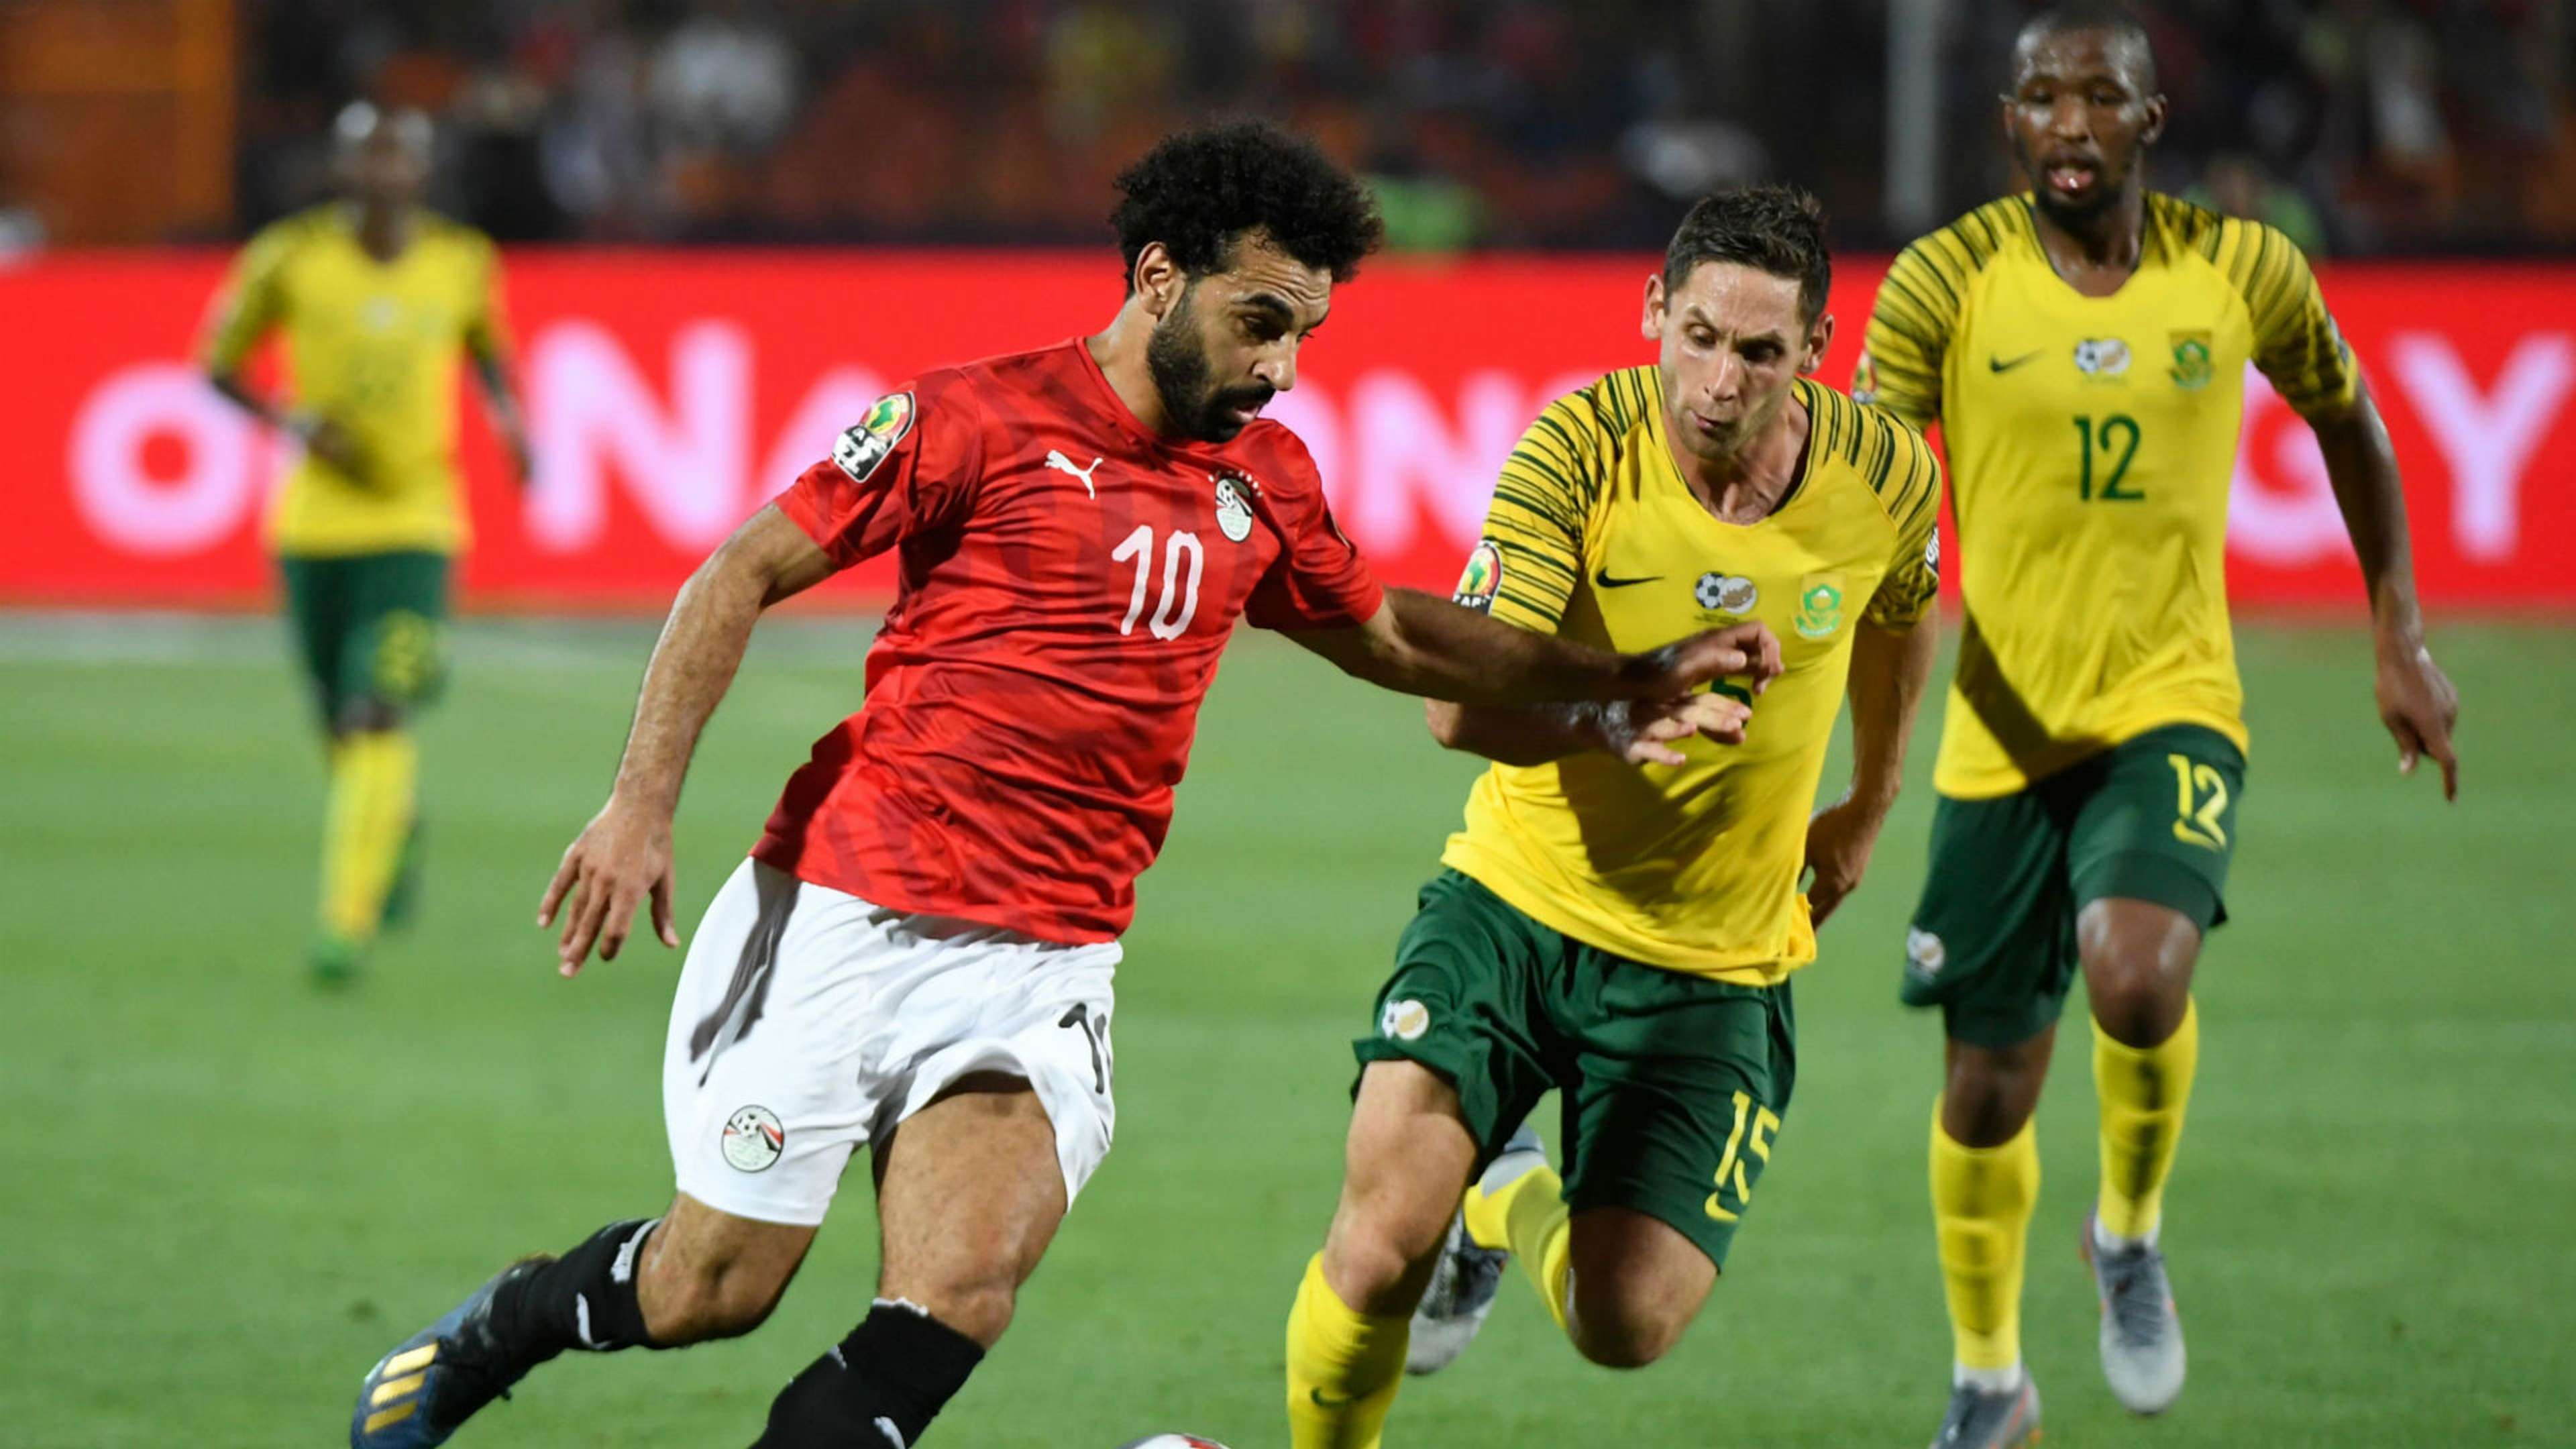 Egypt v South Africa Mohamed Salah, Dean Furman and Kamohelo Mokotjo - July 2019